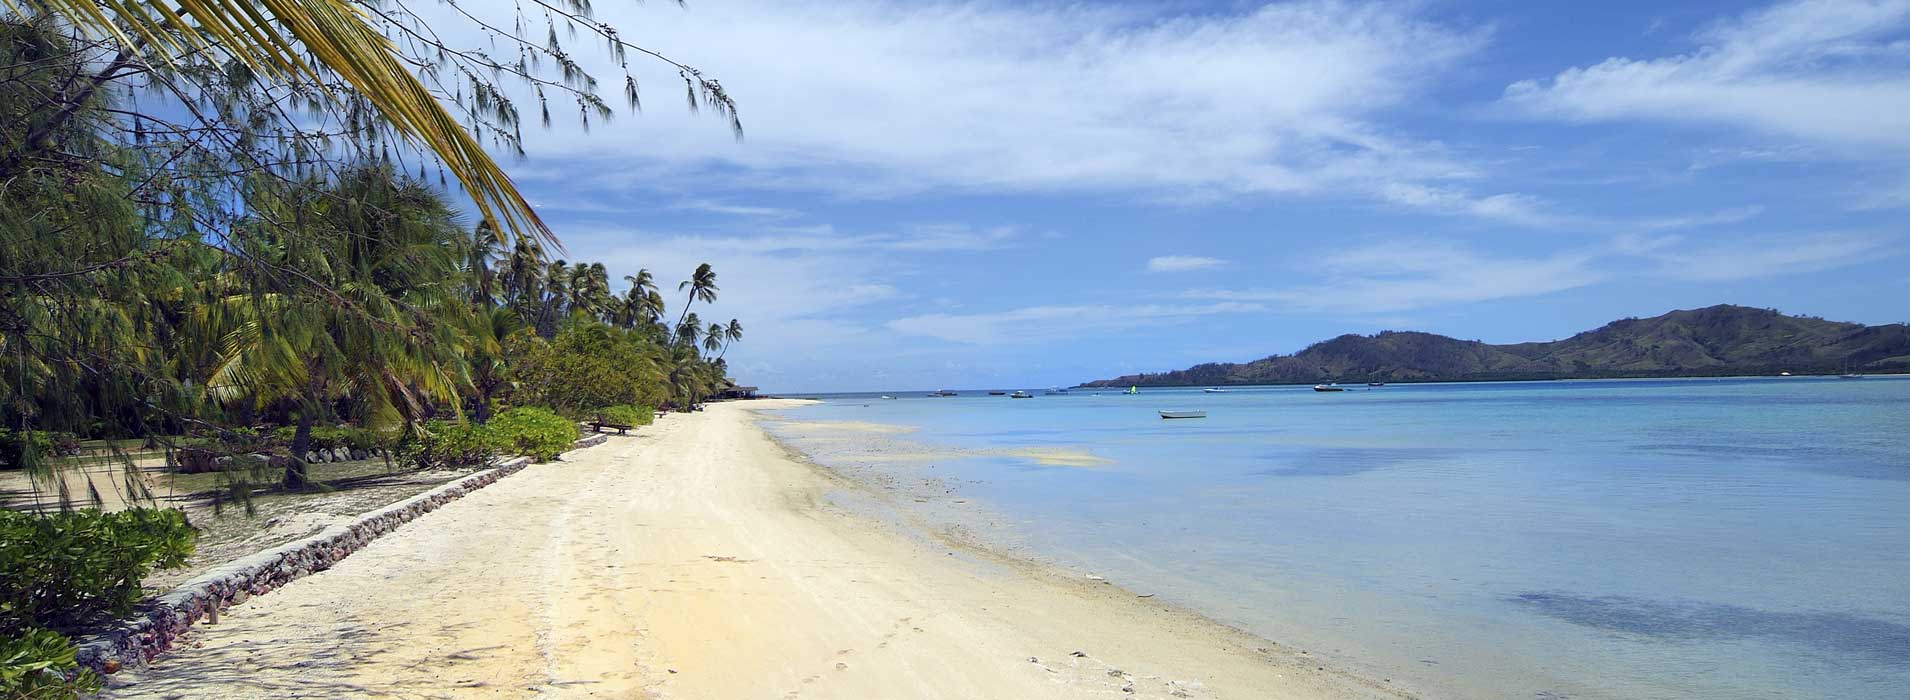 Malolo Lailai Island